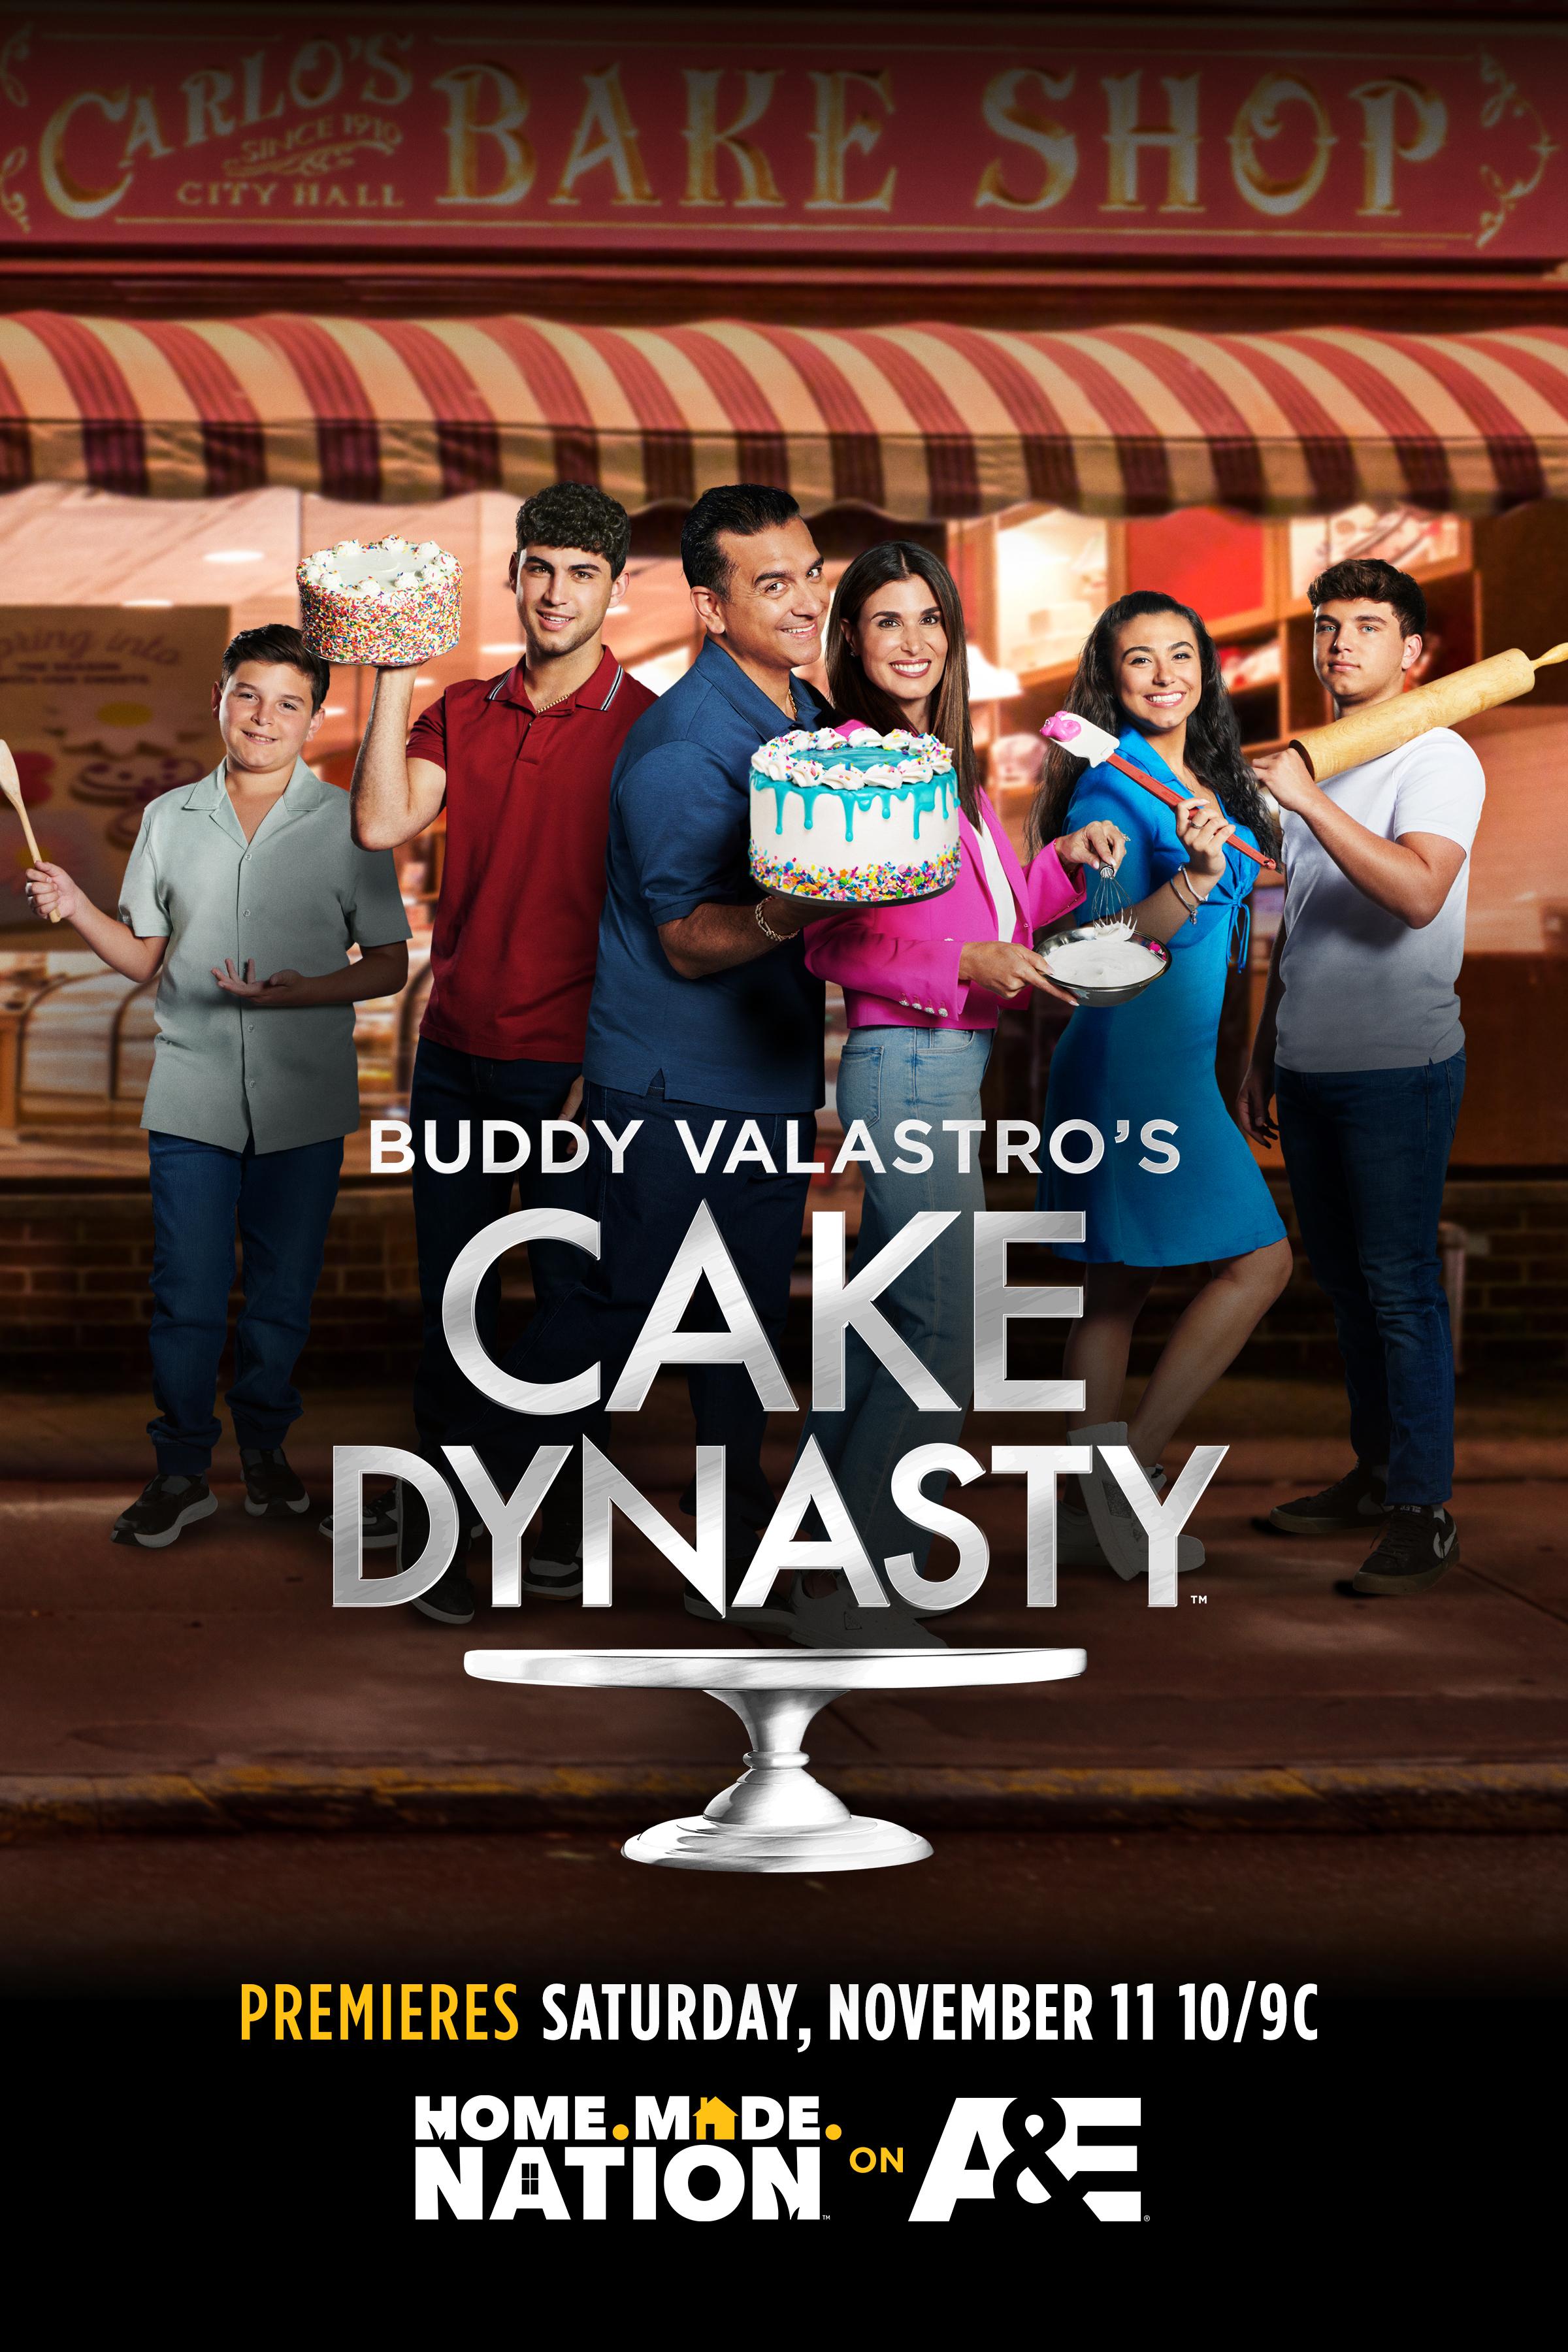 Buddy Valastro’s Cake Dynasty